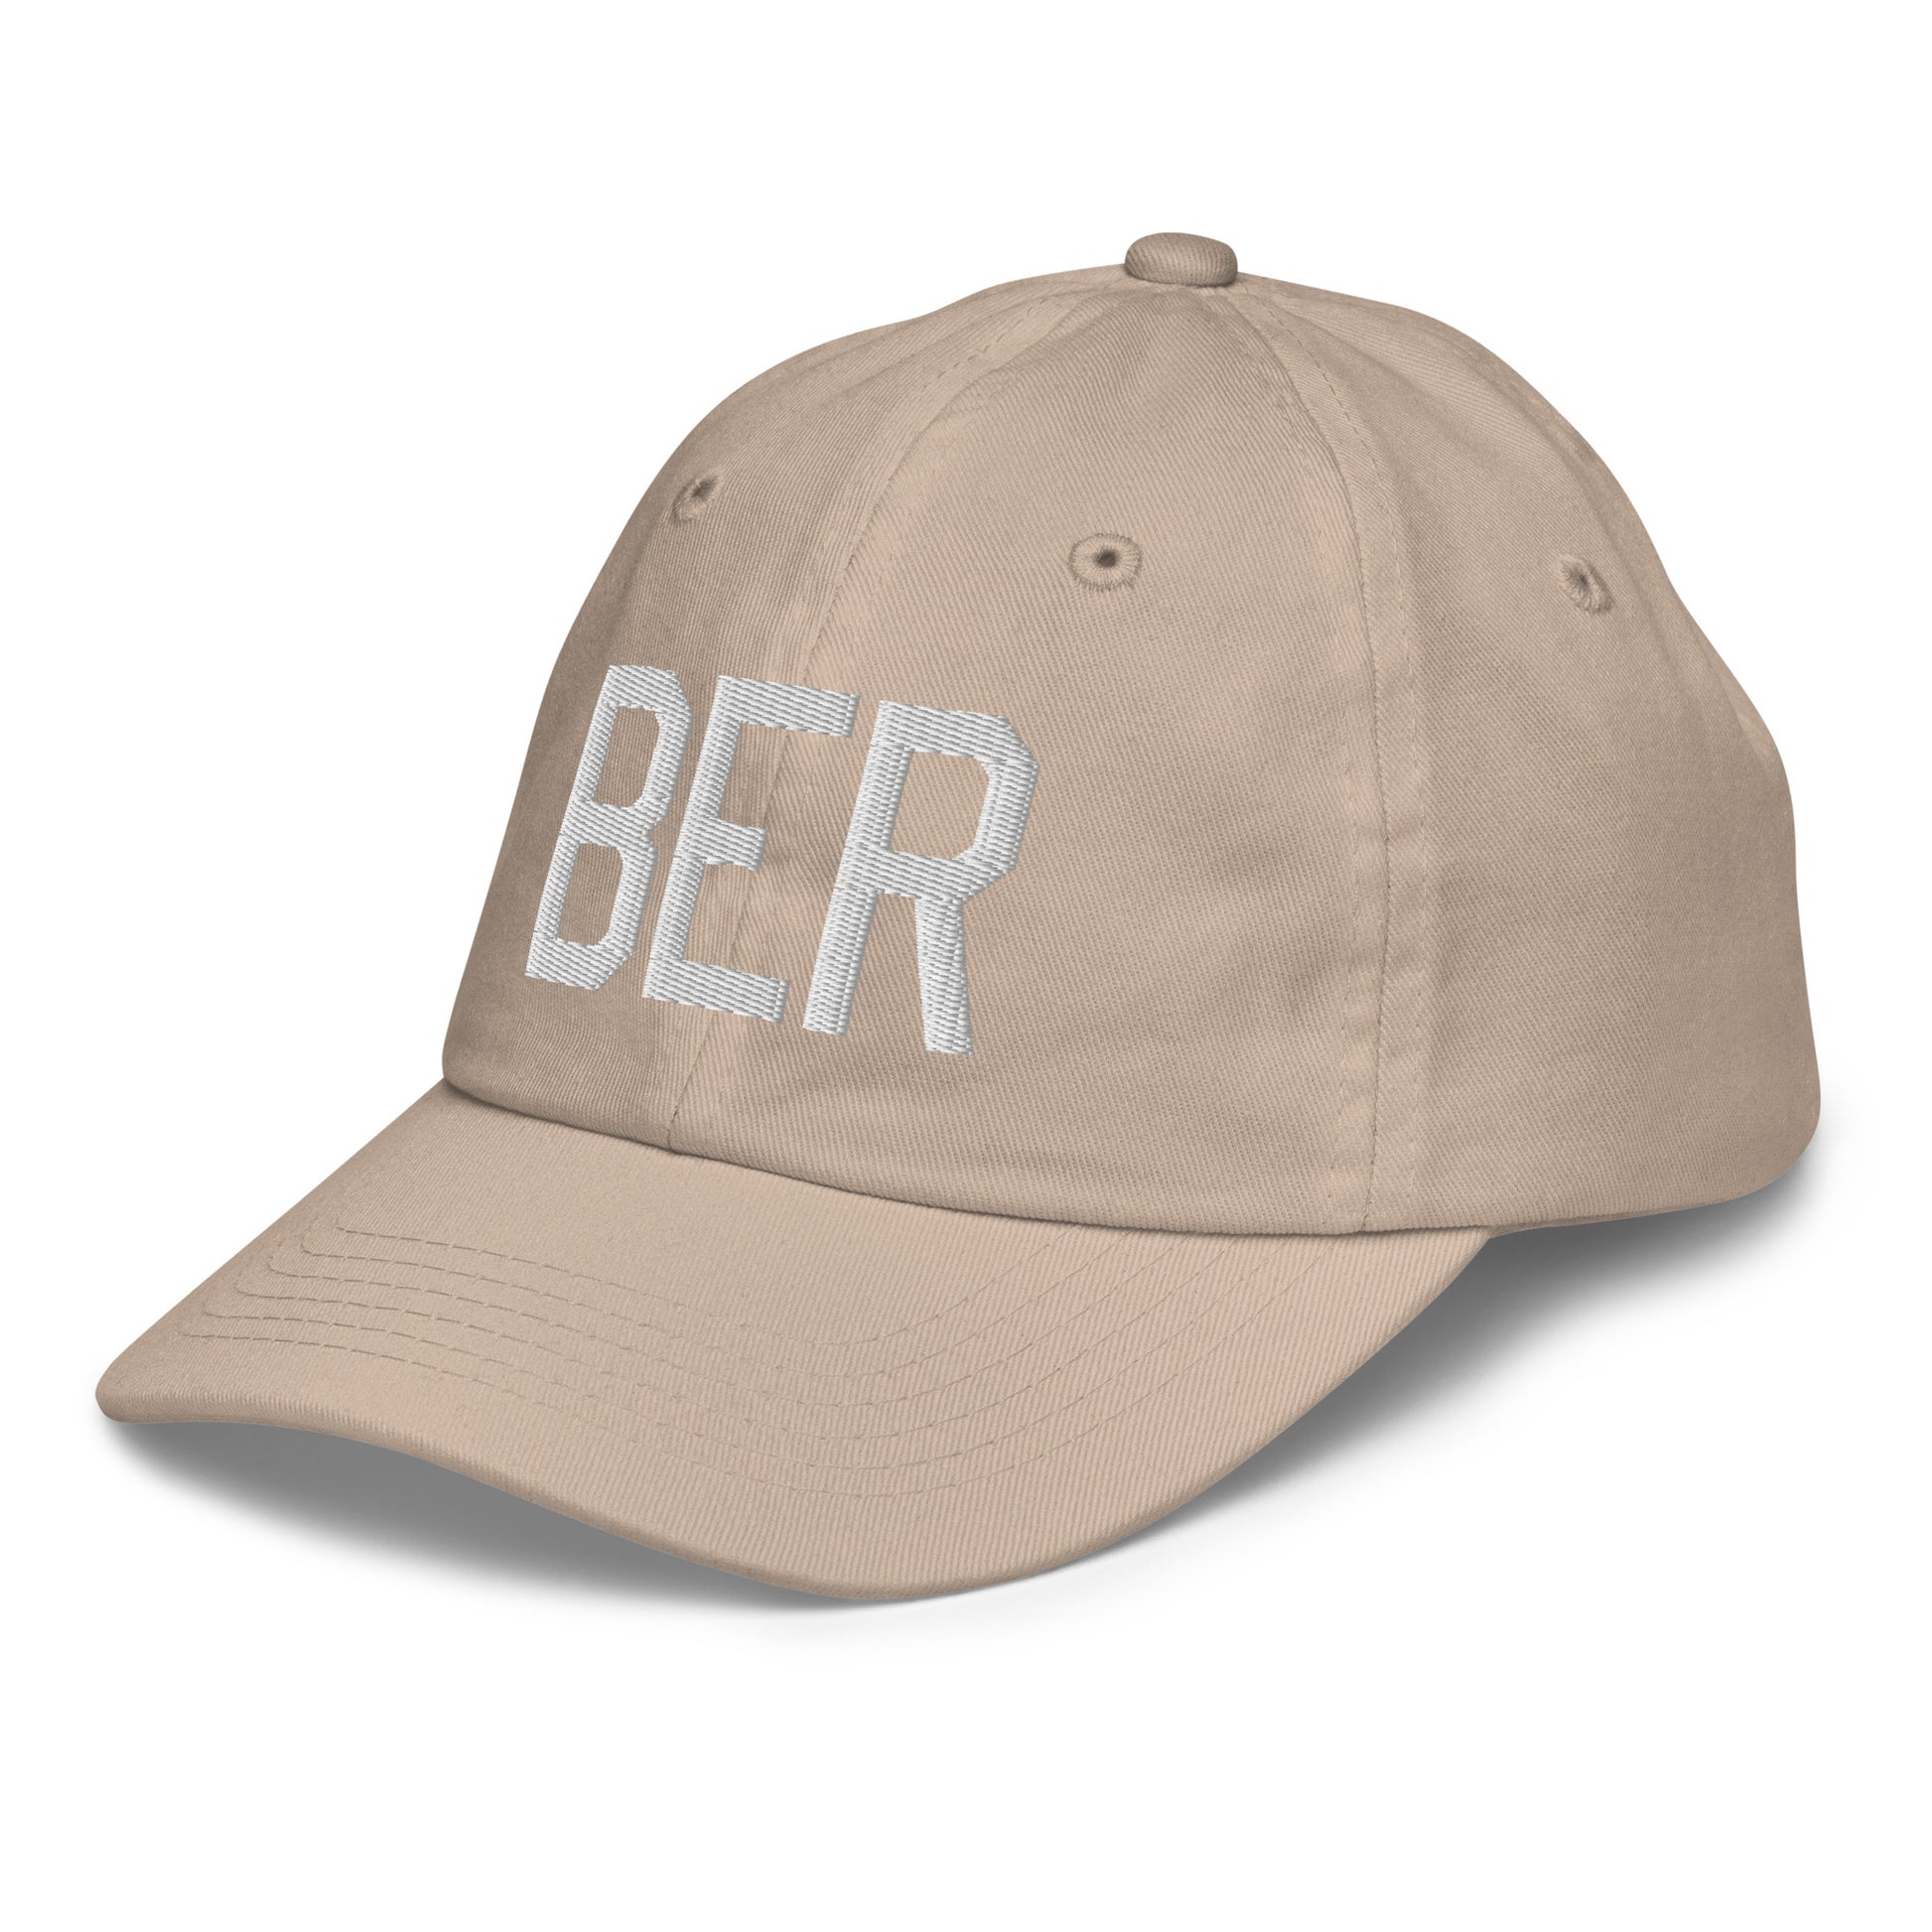 Airport Code Kid's Baseball Cap - White • BER Berlin • YHM Designs - Image 30